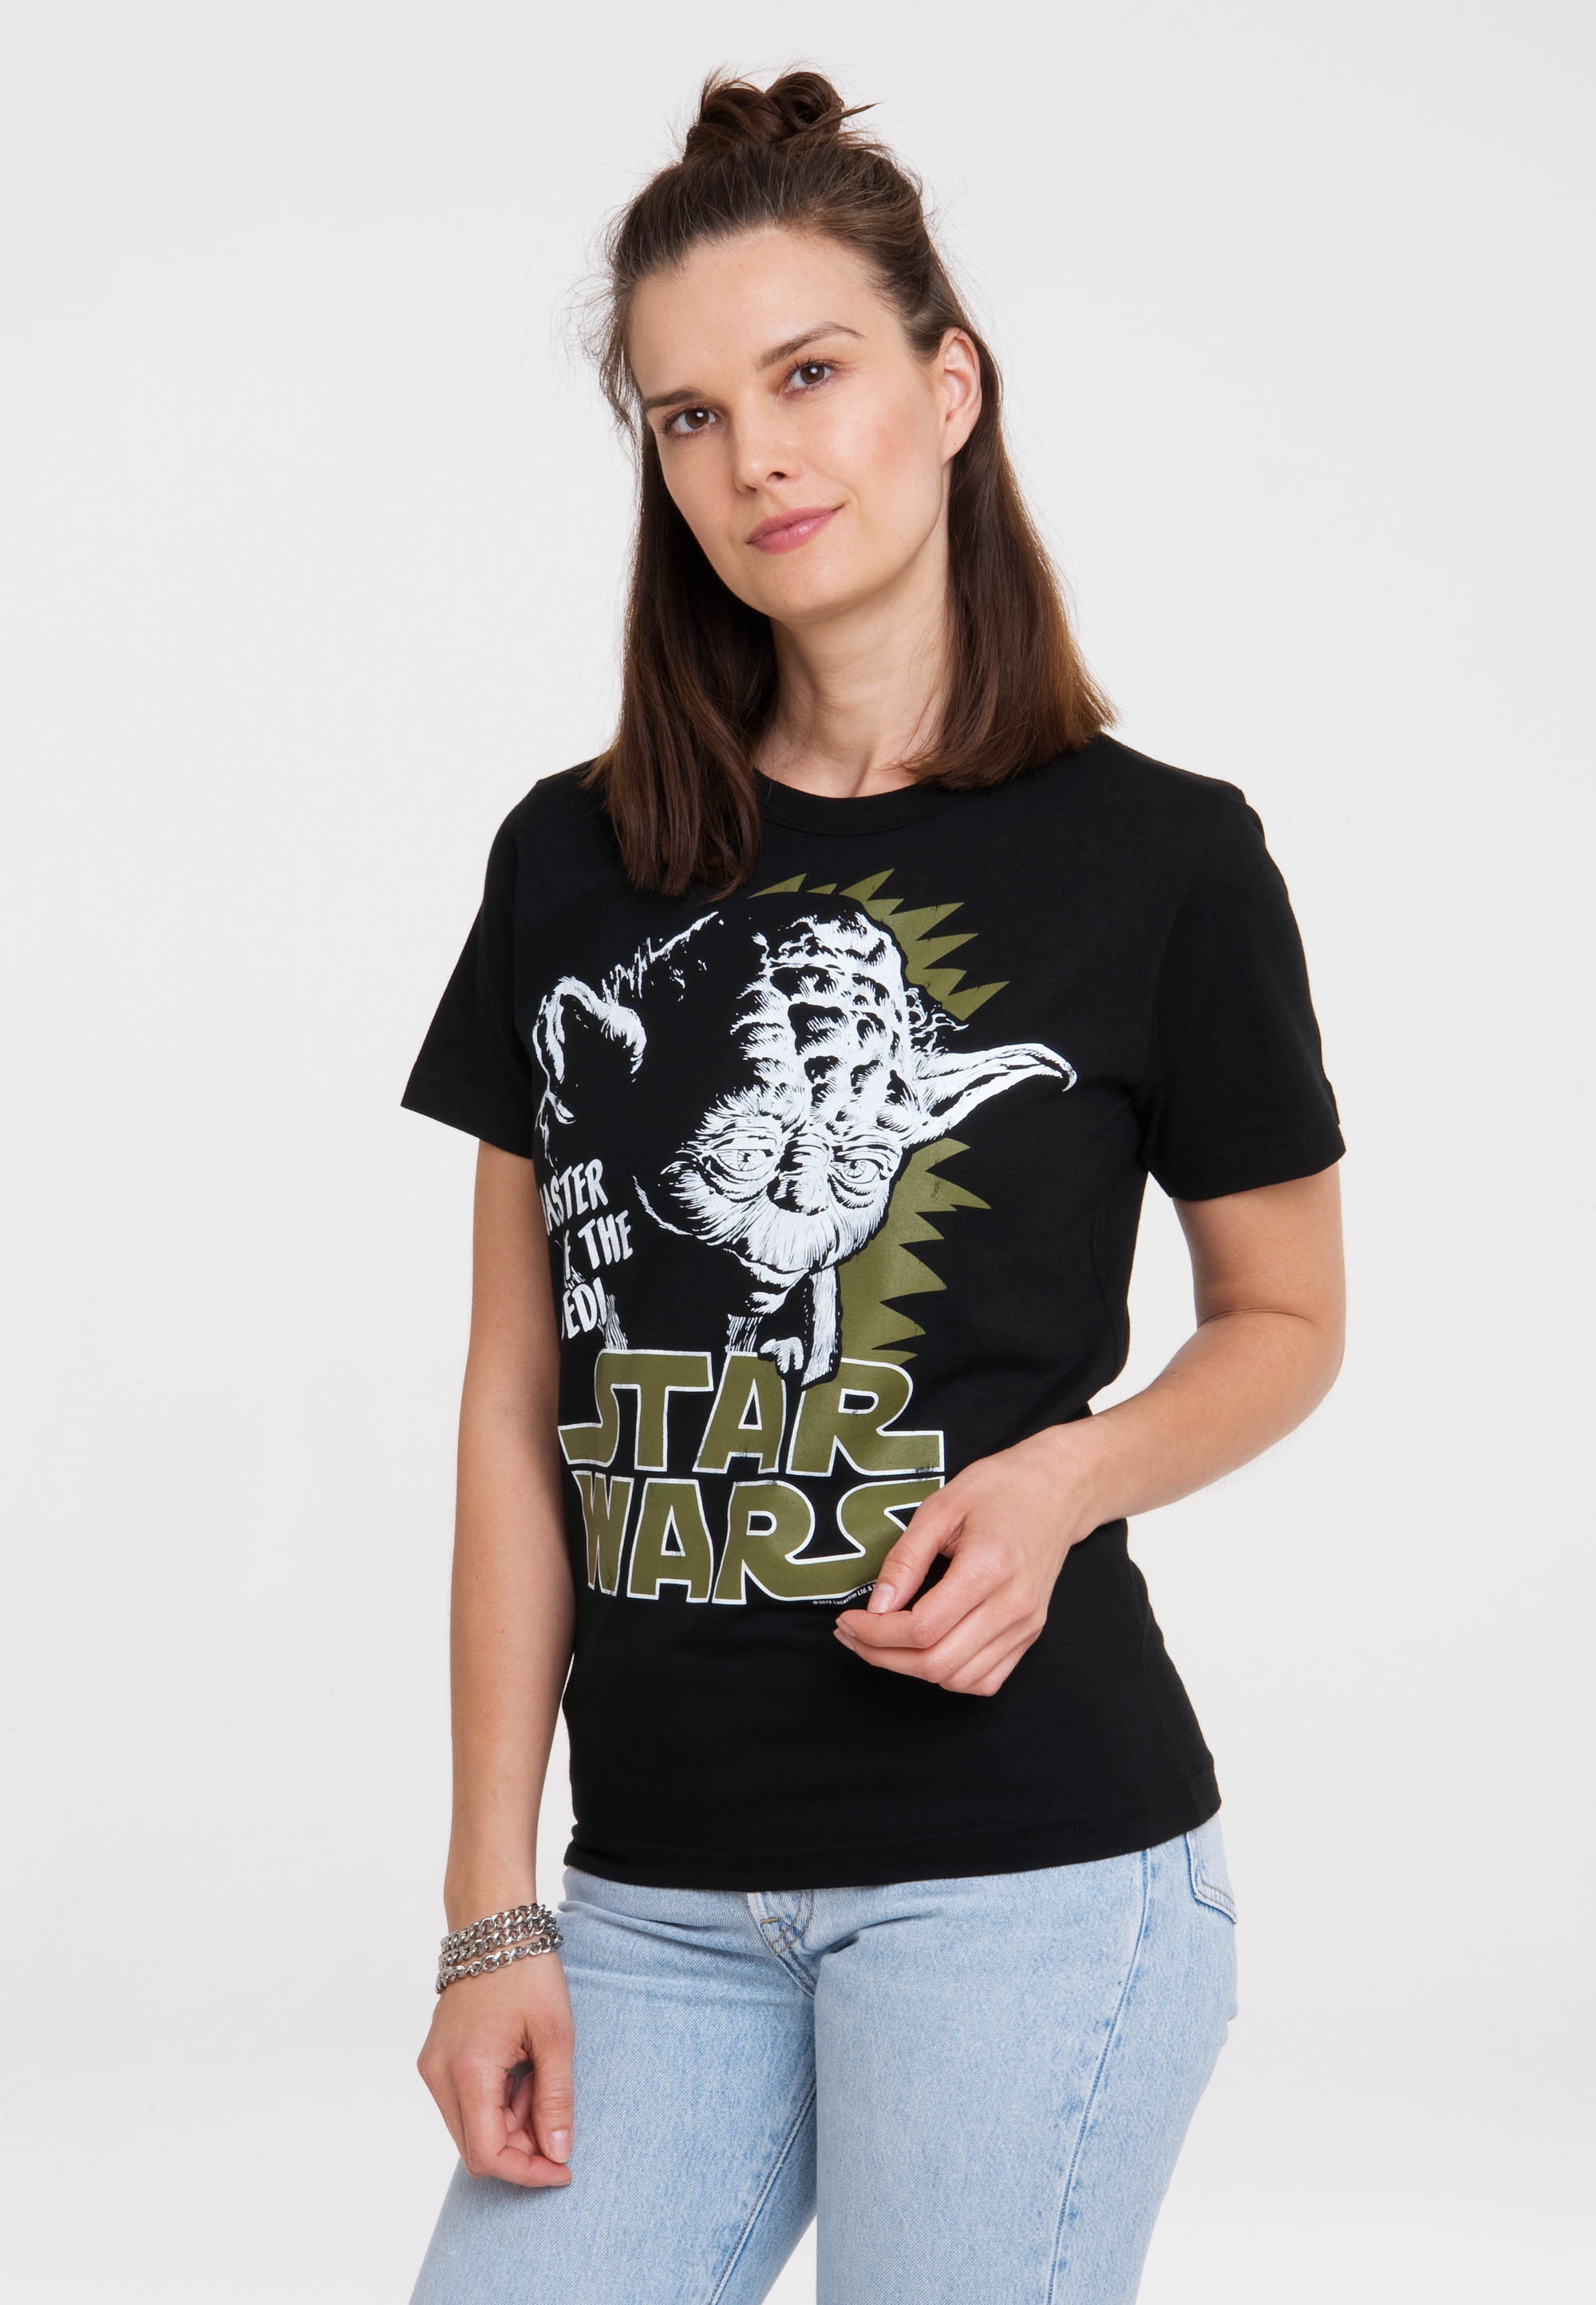 bestellen Yoda«, LOGOSHIRT »Star mit T-Shirt - Print lizenziertem Wars